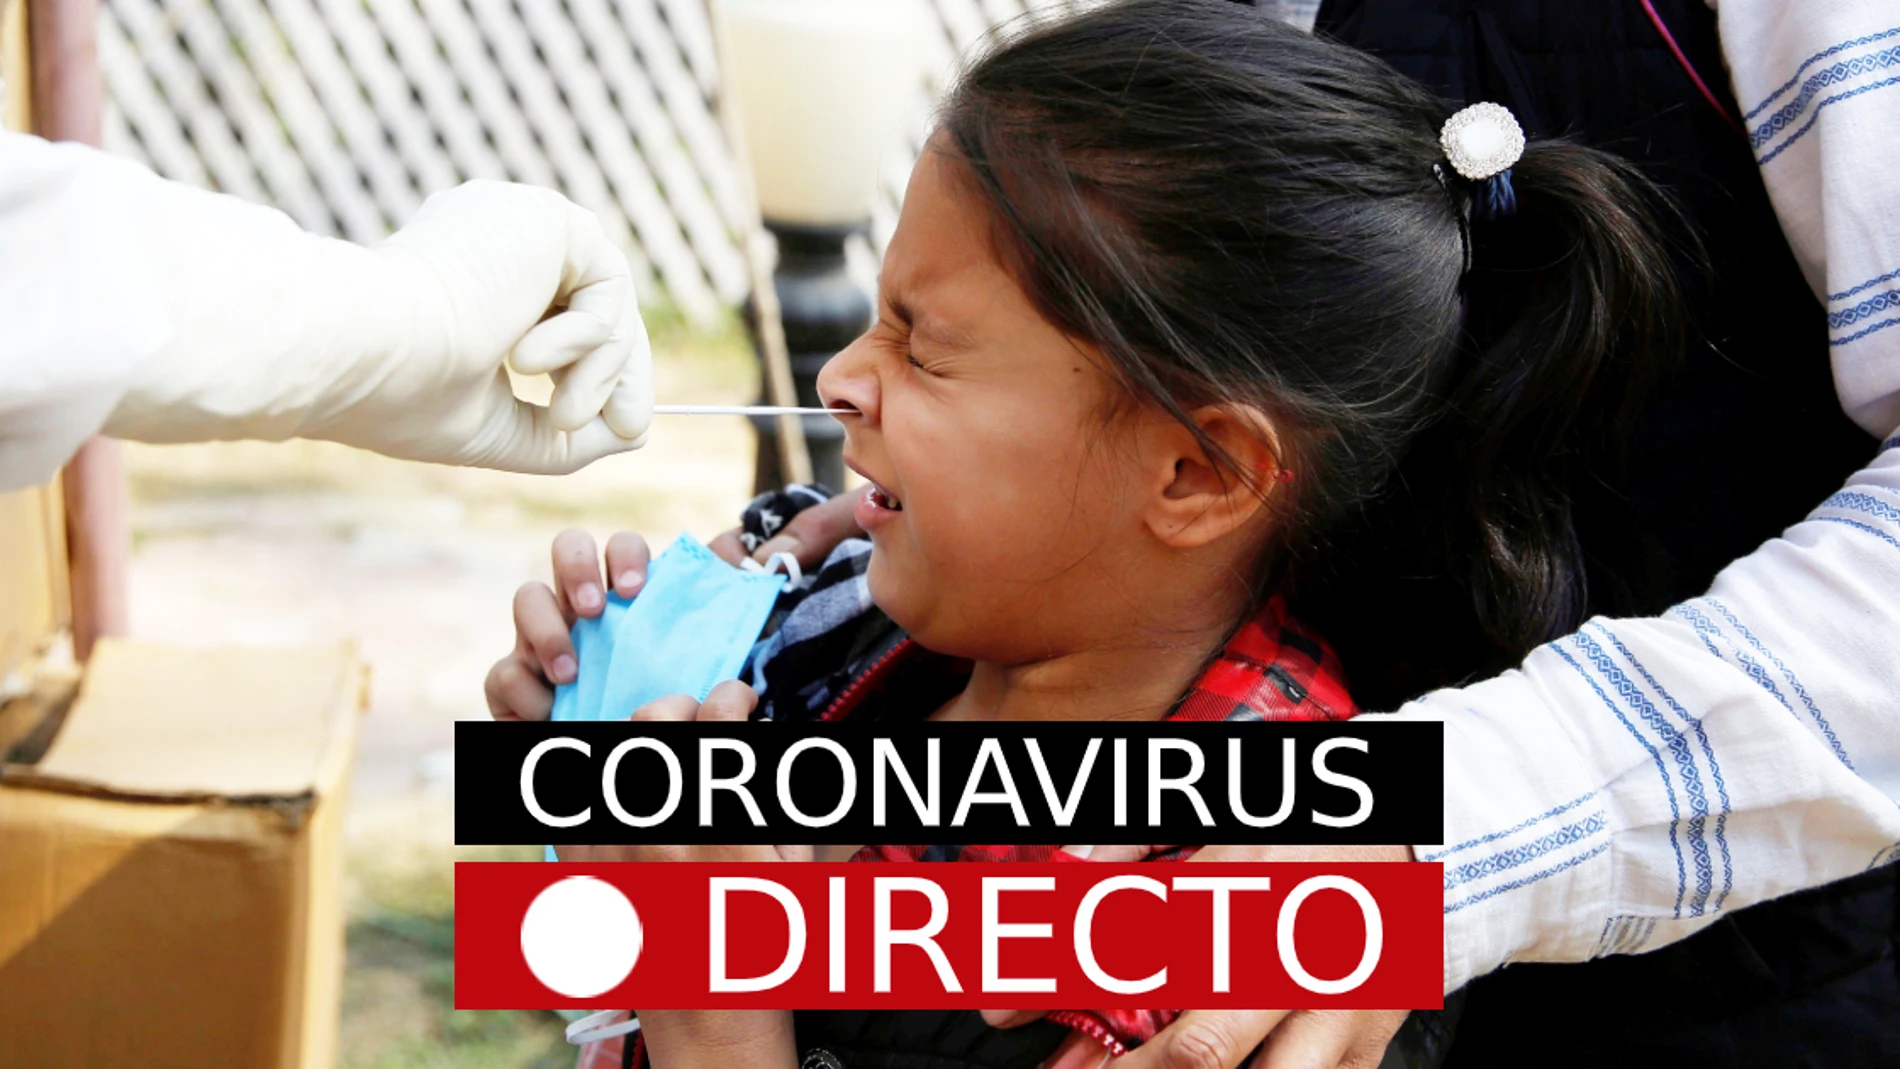 Coronavirus en España y Madrid: Última hora del estado de alarma y confinamiento por COVID-19 EN DIRECTO